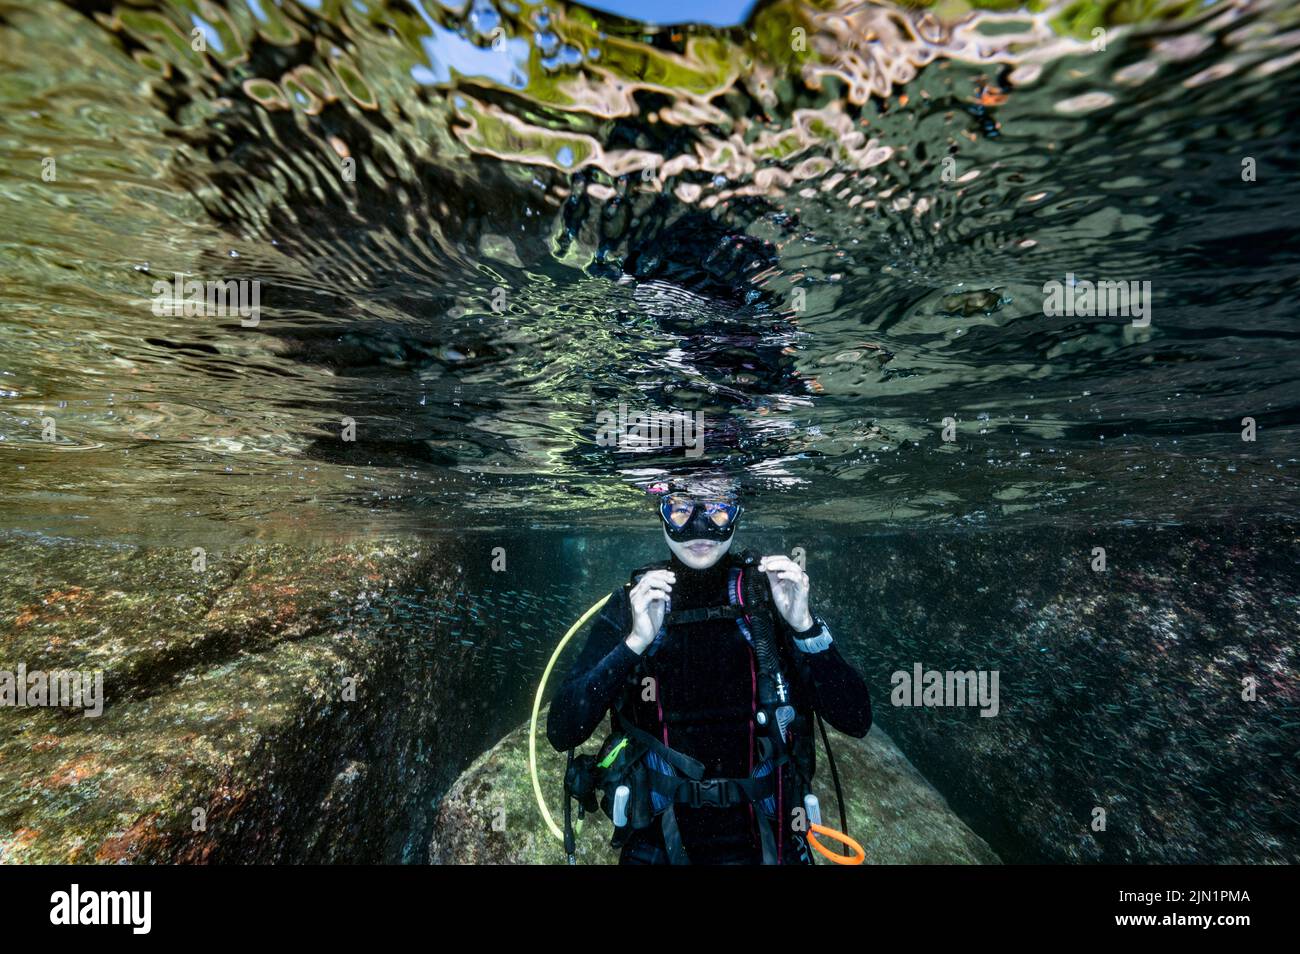 die unterwasserwelt der Andamanensee liegt in den tropischen Gewässern der andamanensee Stockfoto